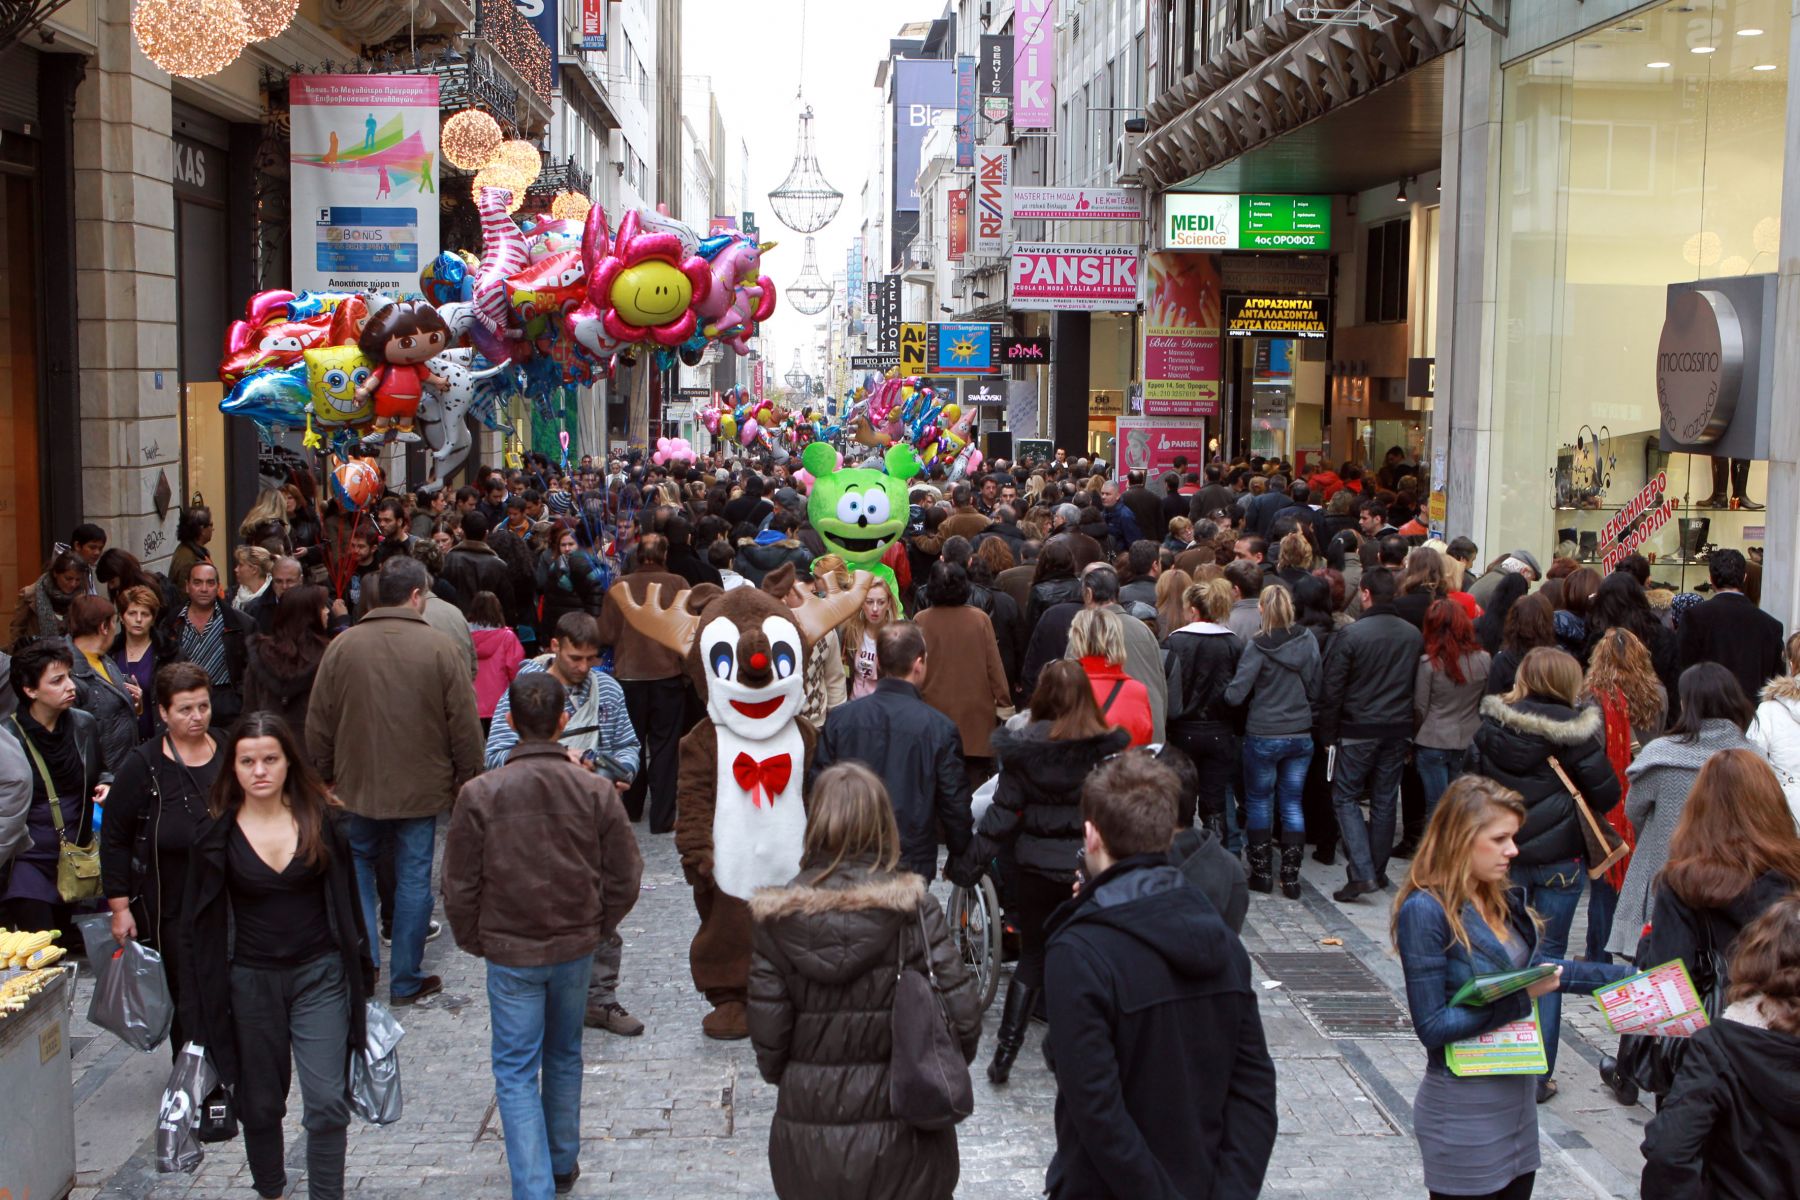 Κορκίδης: Η καλή αρχή της εορταστικής αγοράς στην Αττική θα έχει καλύτερη συνέχεια